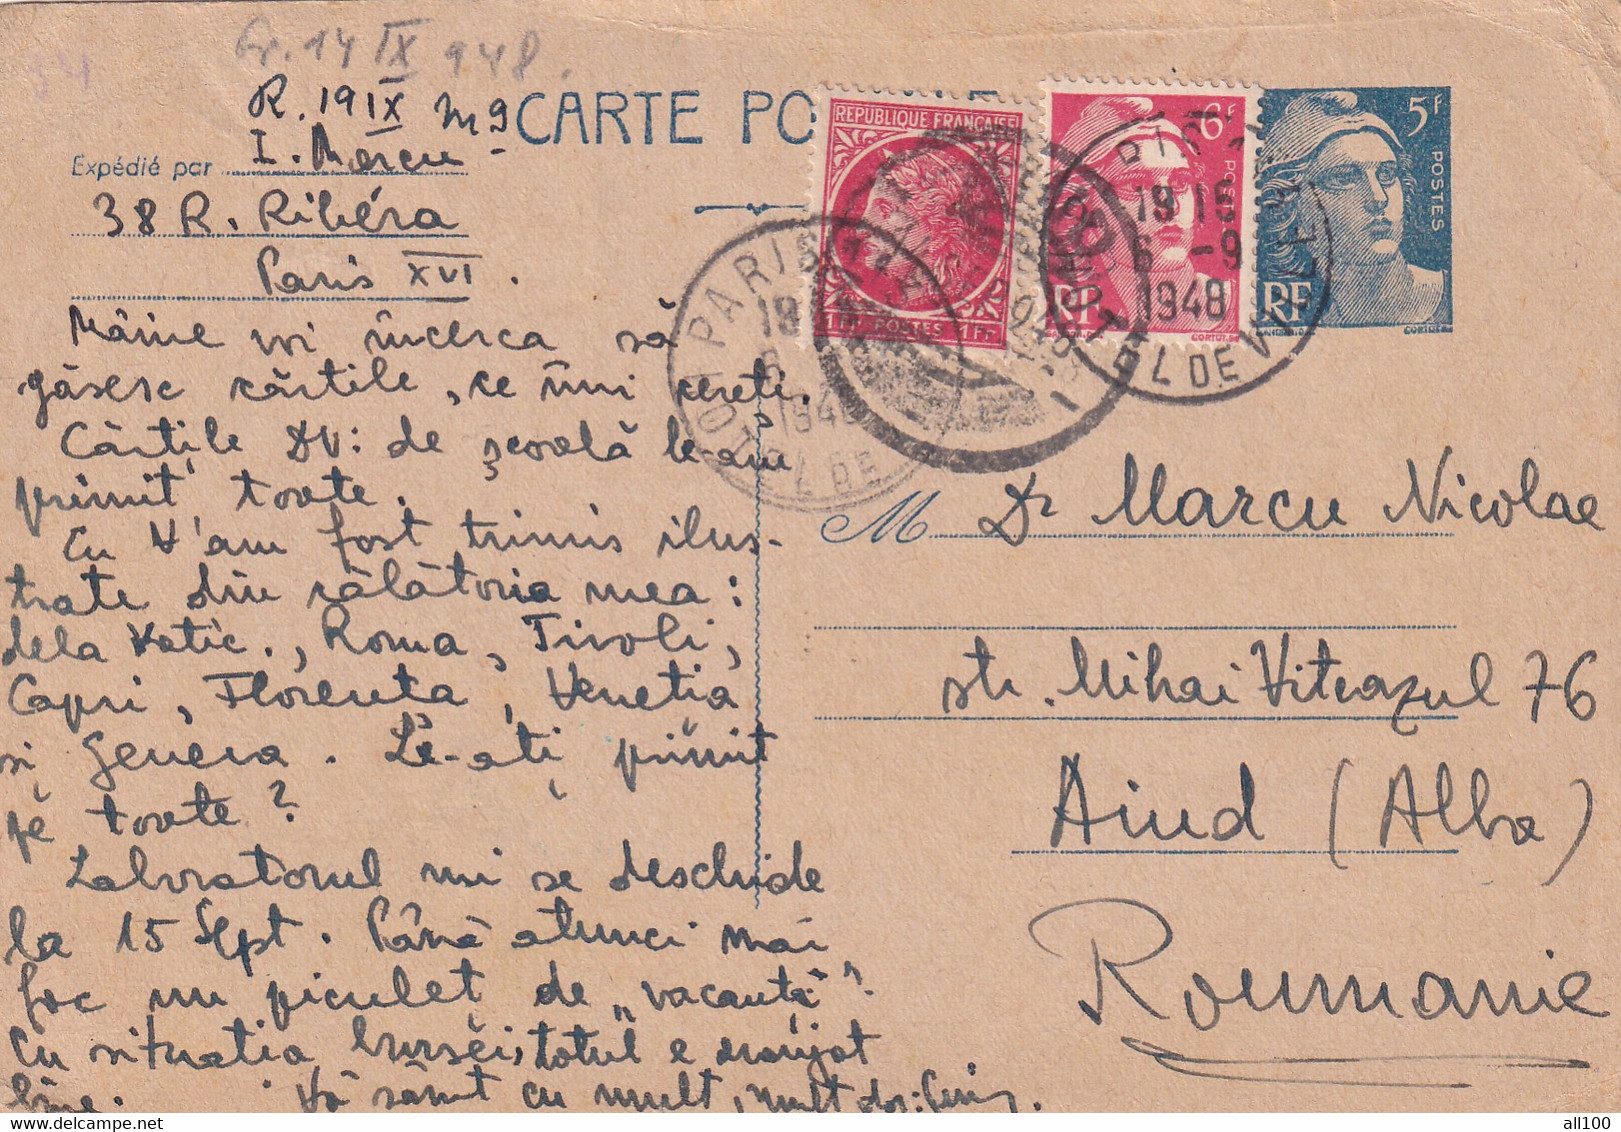 A17018 - ROMANIA 1948 Postal Stationery SENT TO AIUD JUD. ALBA  USED - Usati